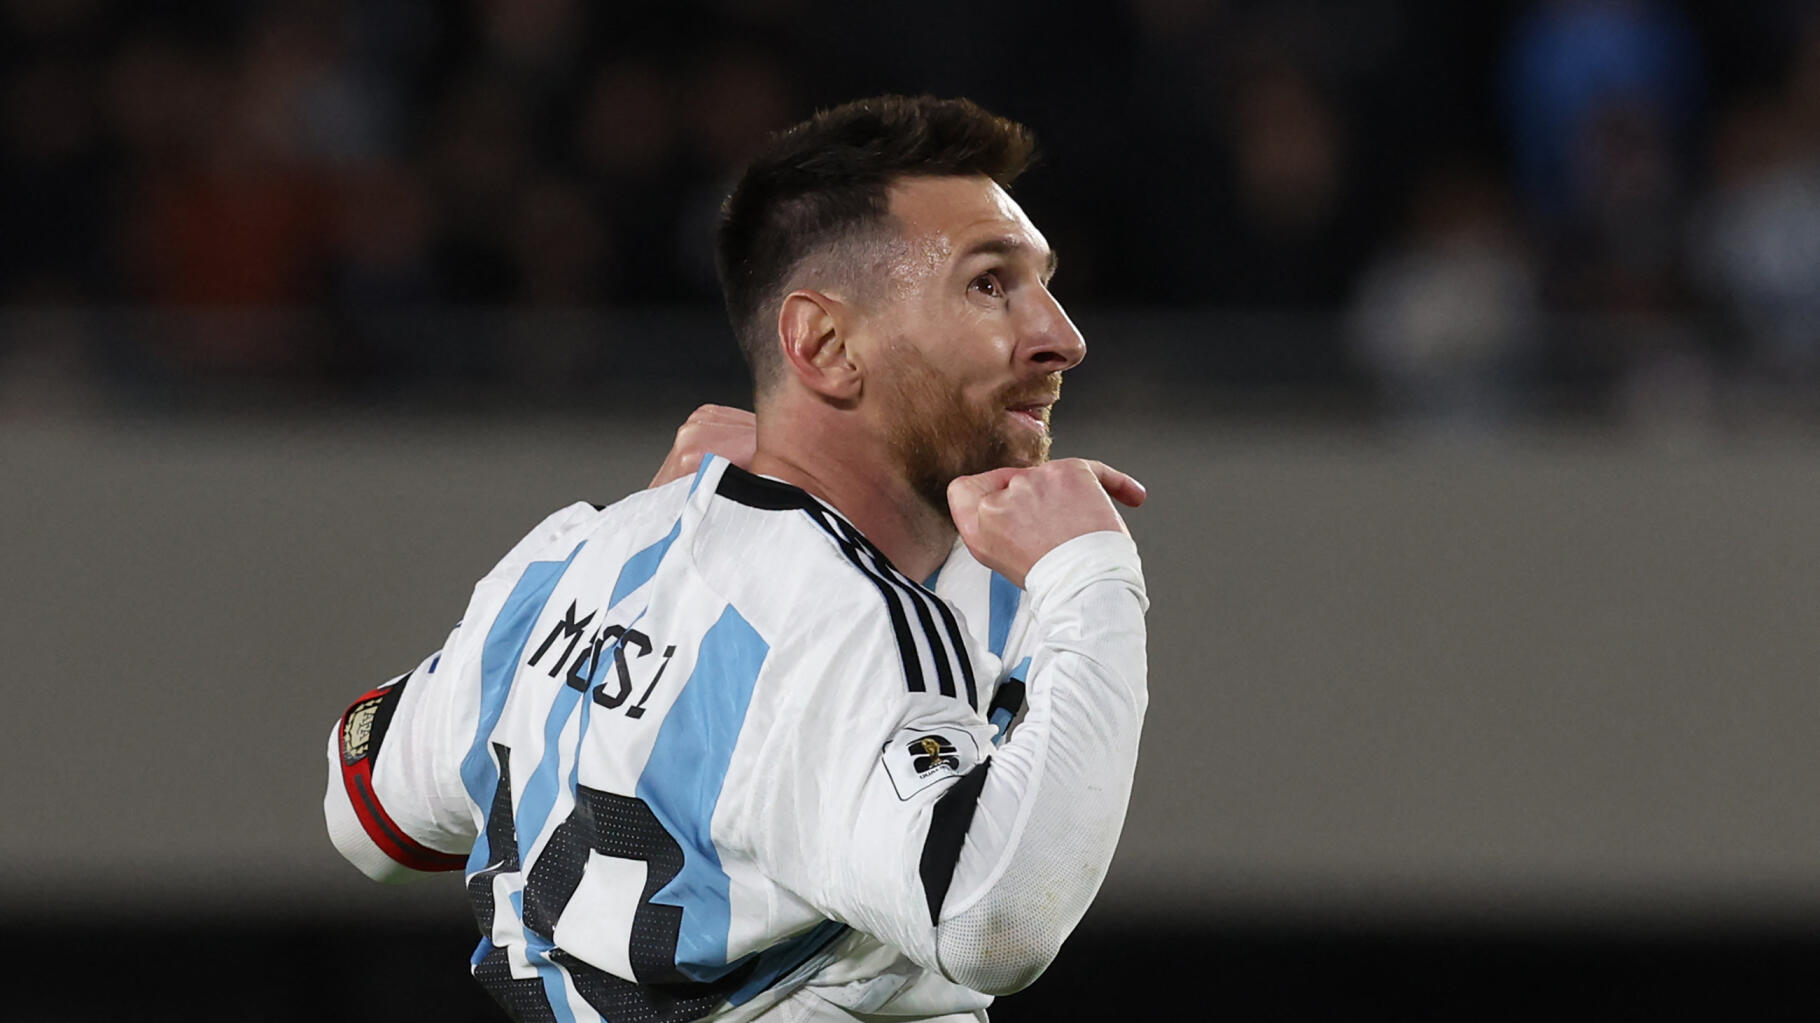 Lionel Messi zostaje opluwany w trakcie meczu Argentyny z Paragwajem